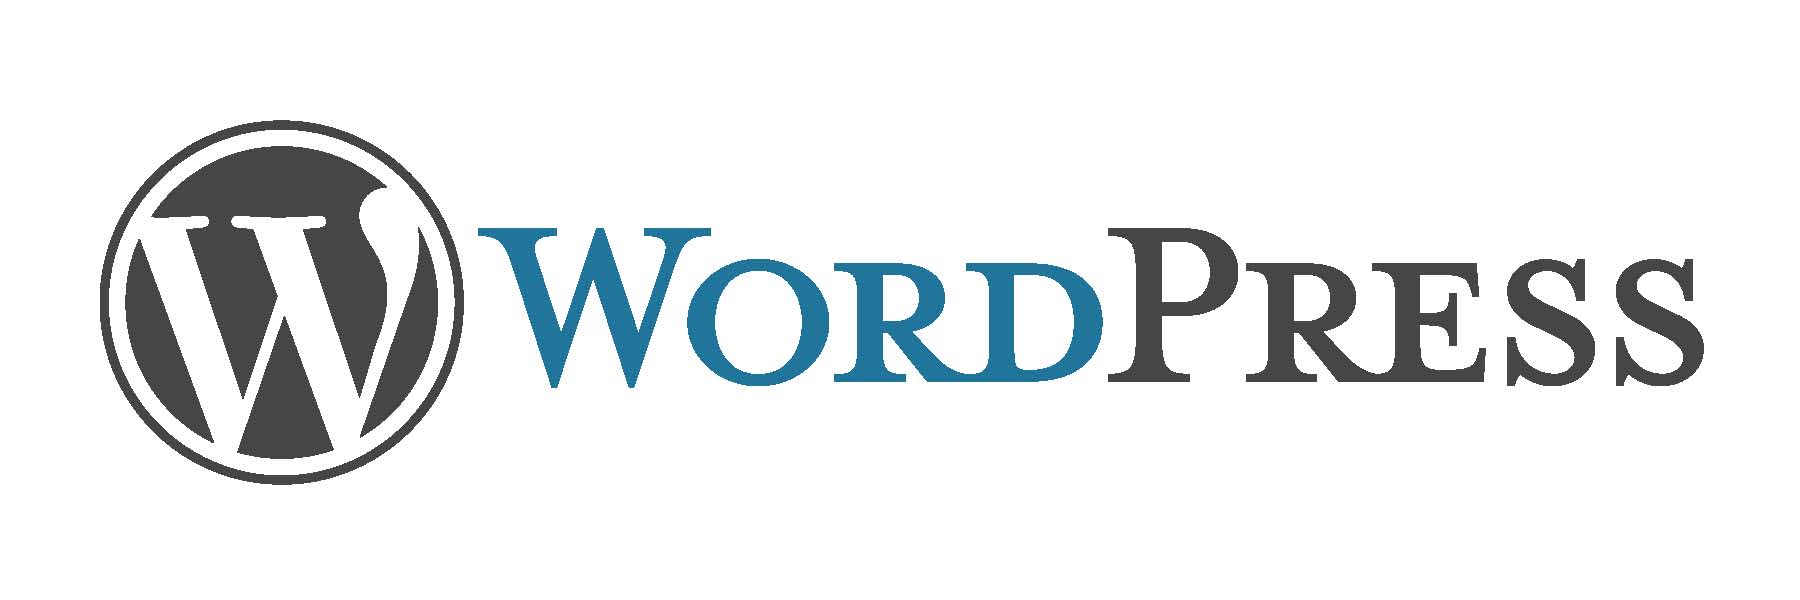 Pourquoi utiliser Wordpress